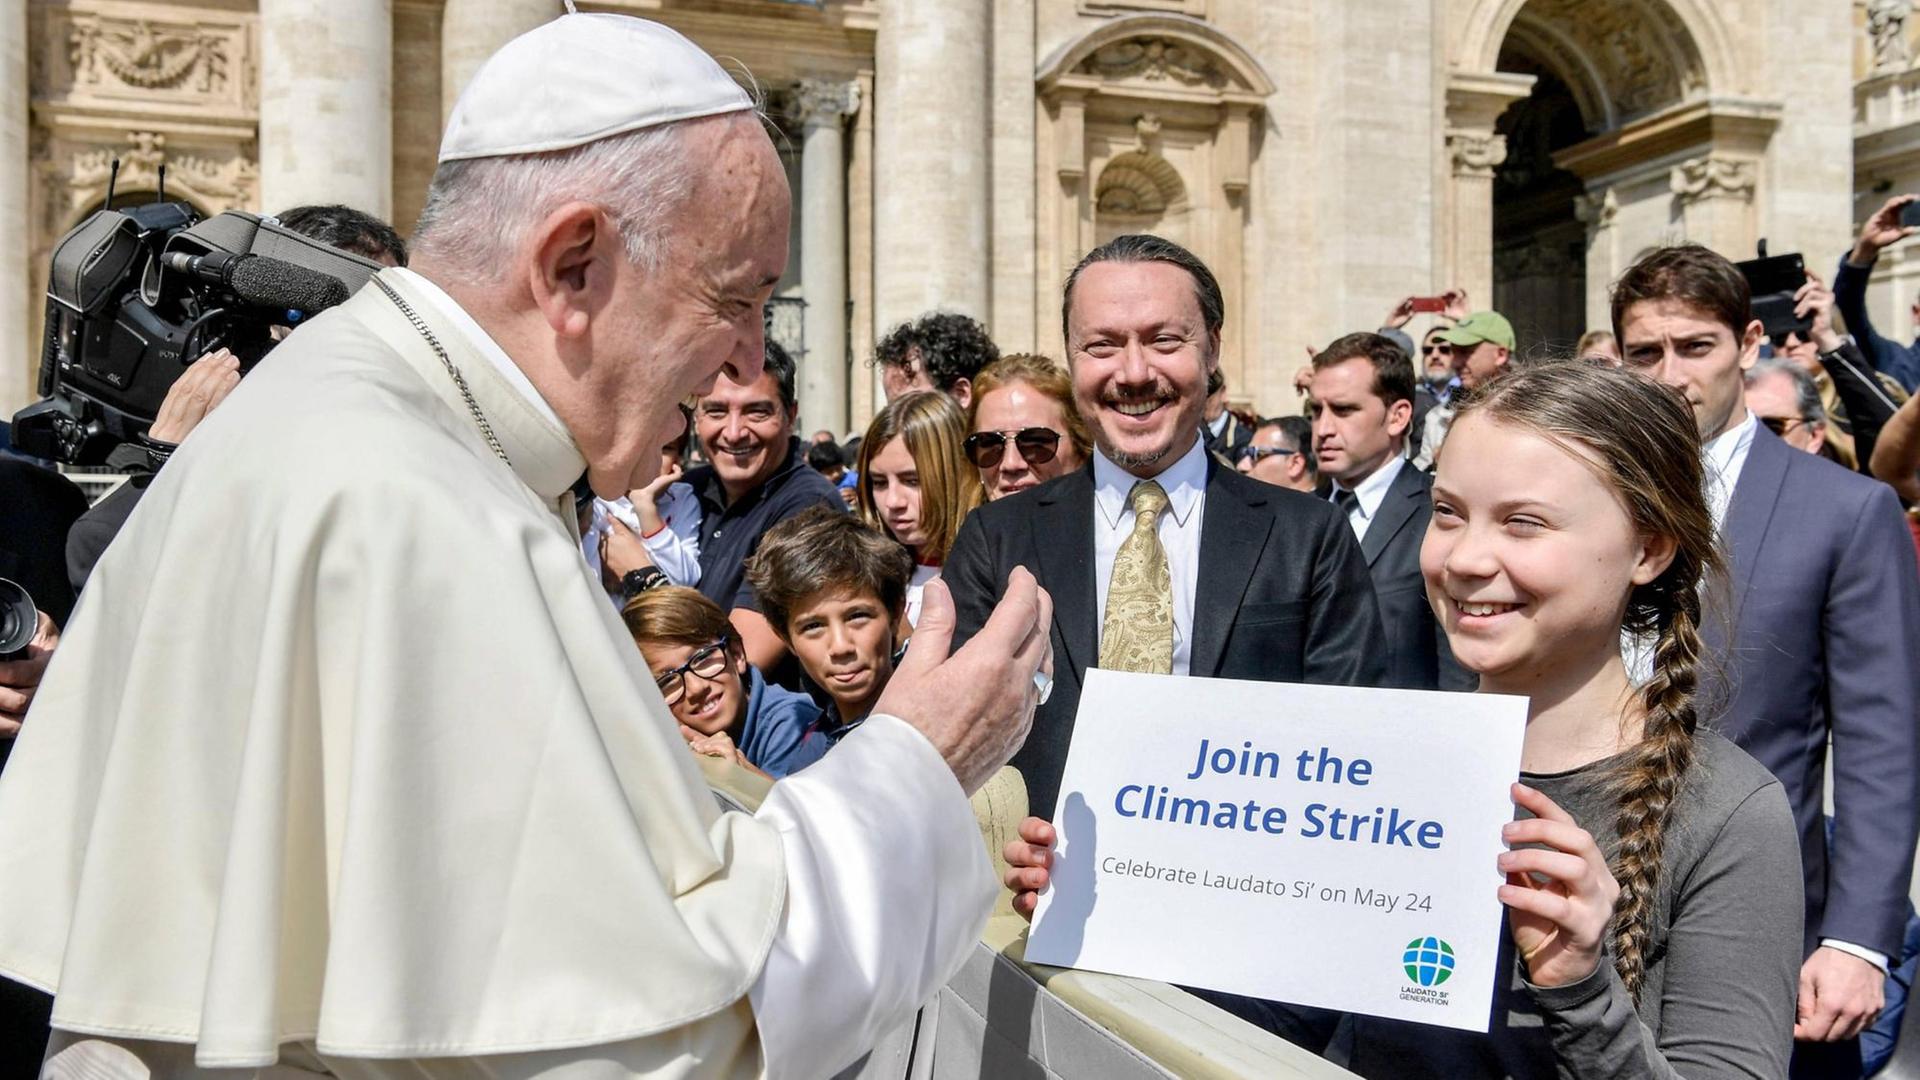 Die schwedische Klimaaktivistin Greta Thunberg steht bei der Generalaudienz des Papstes am 17.4. 2019 in der ersten Reihe und hält Franziskus ein Schild mit der Aufschrift "Join the Climate Strike" entgegen.